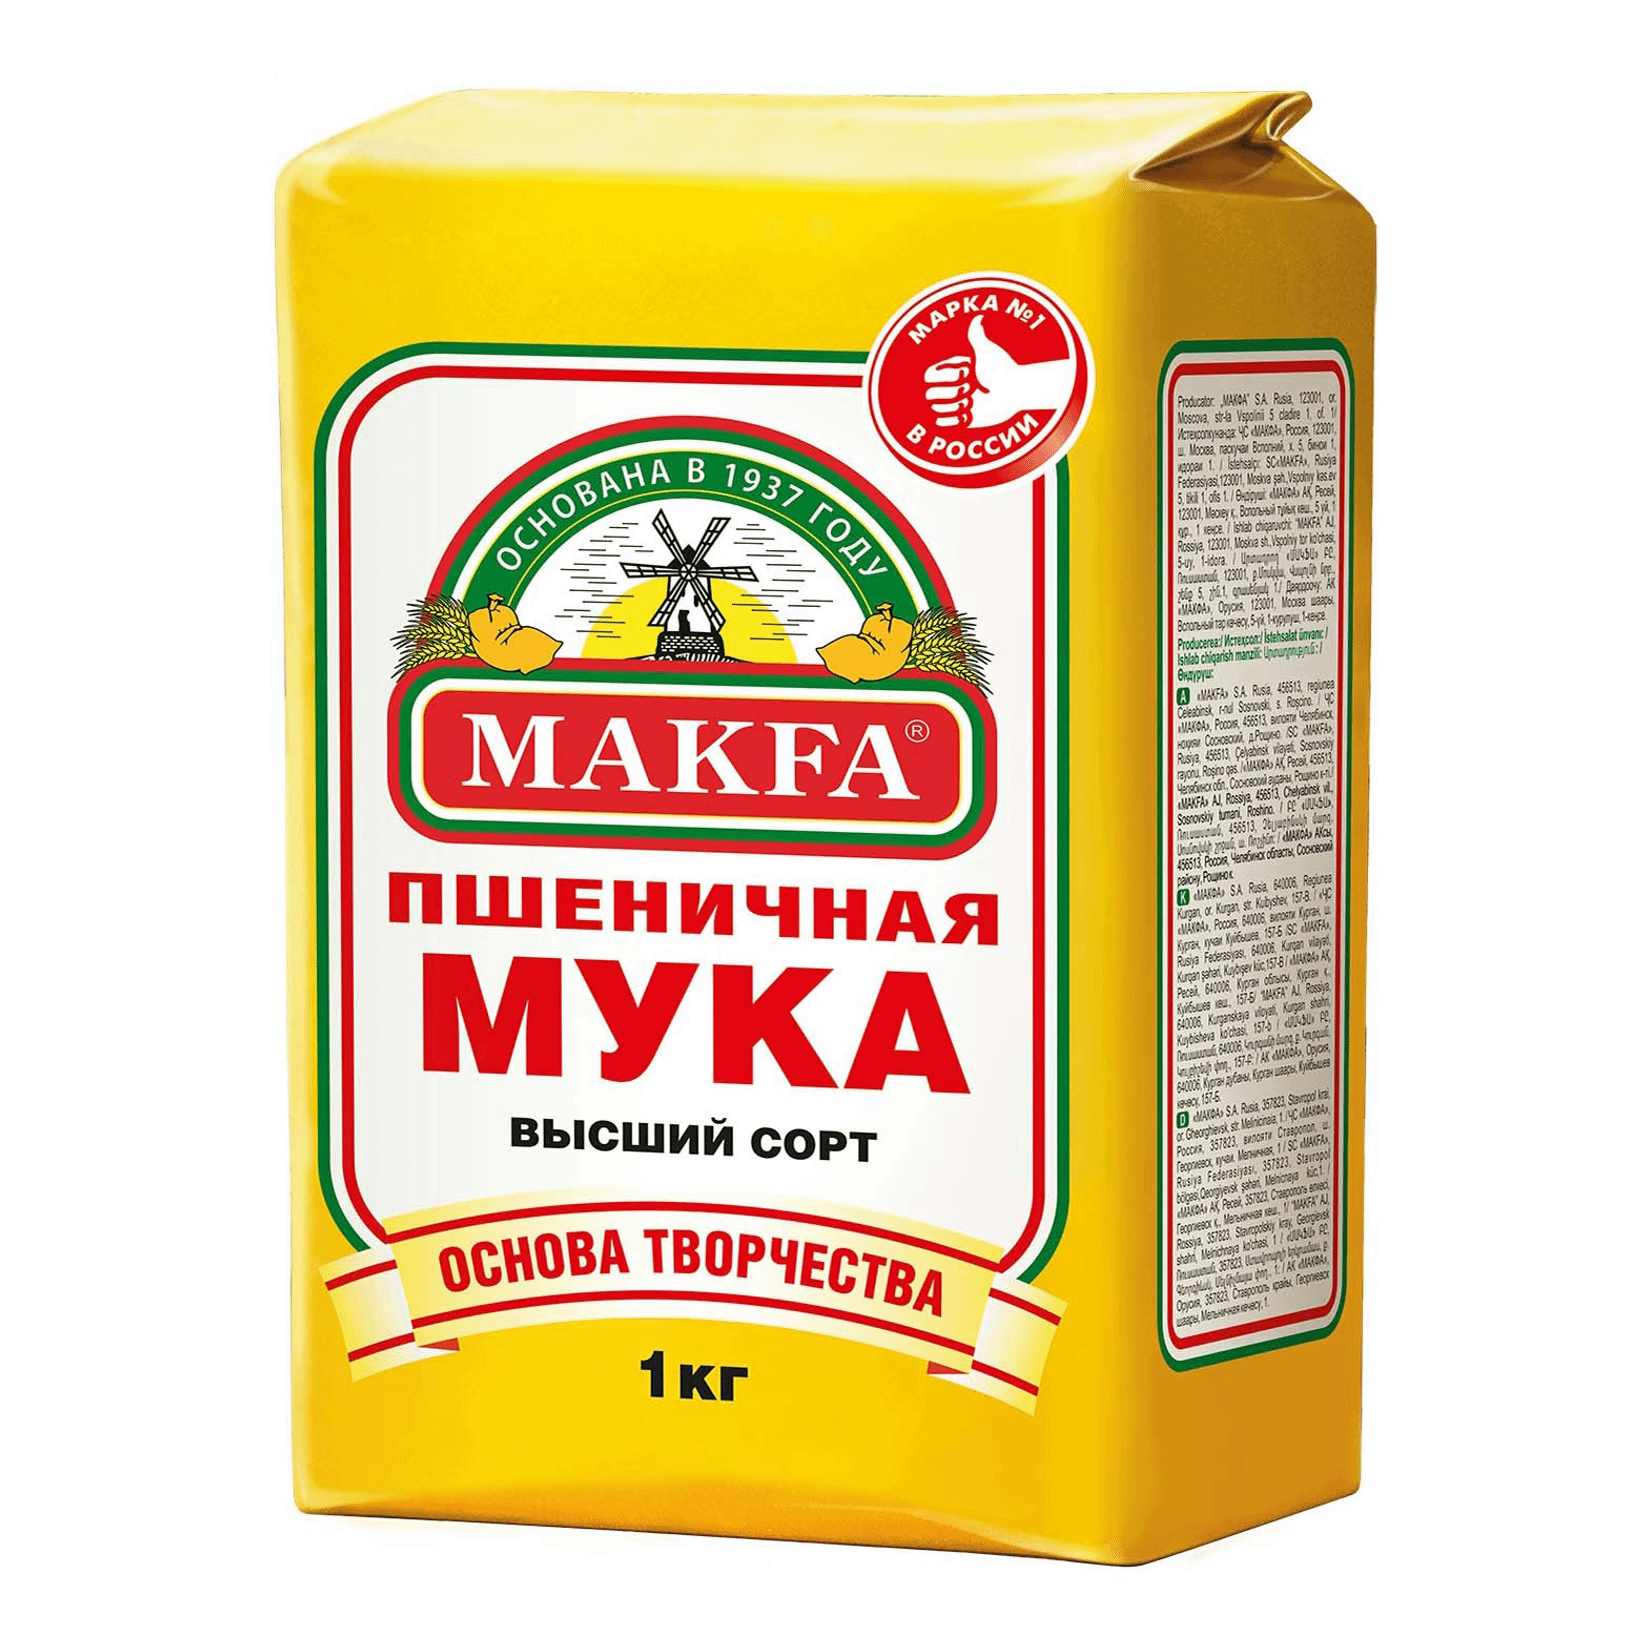 Мука купить розницу. Мука Макфа пшеничная 2 кг. Мука пшеничная makfa, в/с, 2кг. Мука пшеничная высший сорт makfa 1 кг. Мука makfa пшеничная хлебопекарная Экстра 2 кг.